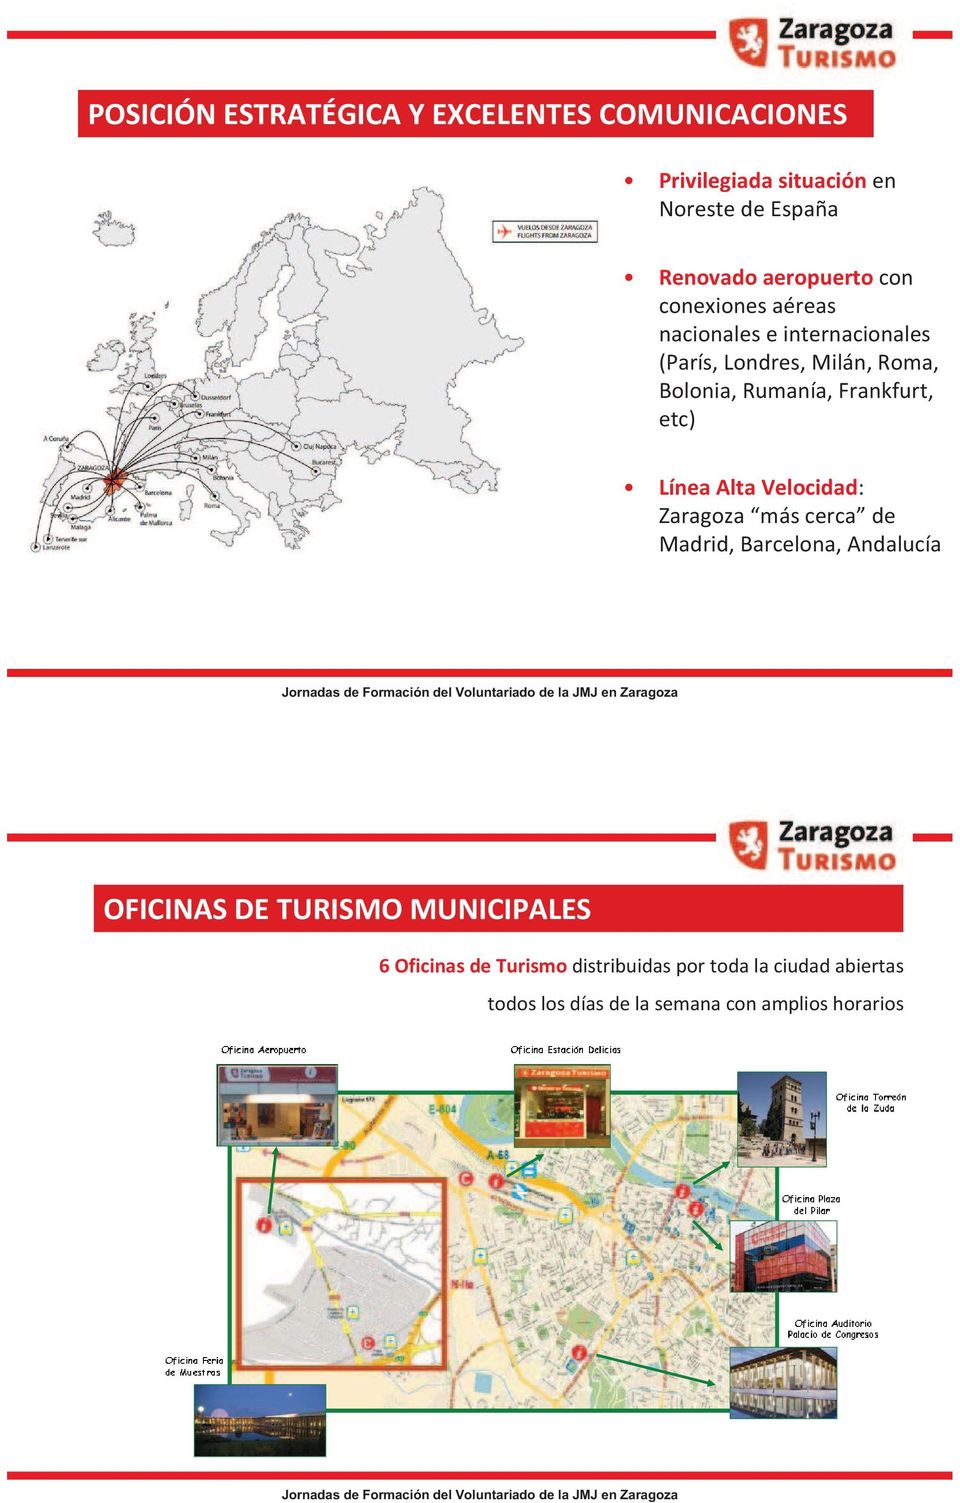 Frankfurt, etc) Línea Alta Velocidad: Zaragoza más cerca de Madrid, Barcelona, Andalucía OFICINAS DE TURISMO